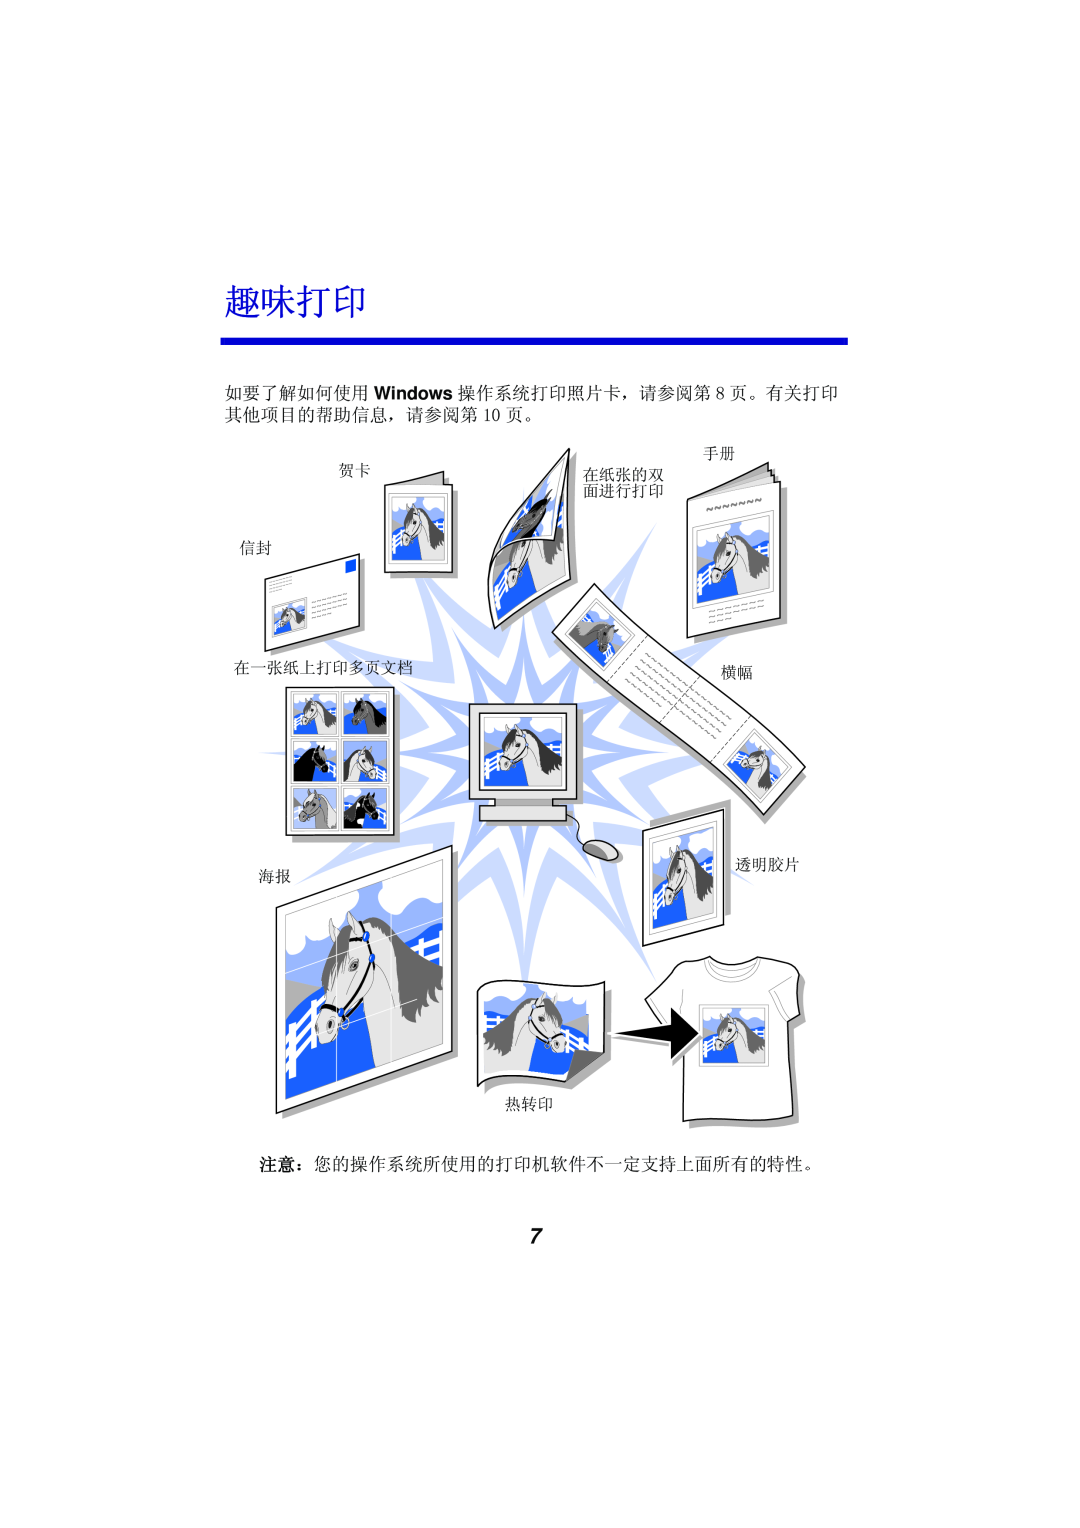 Univex Z55 manual 7%¥7q Windows A ØÙ+,¿ÀÁ ?Ûn Ì çè+, q ¶· ?Ûn ¨, ÐÑ§A ØÙE+,-«ª~üŽ3˜Eç 